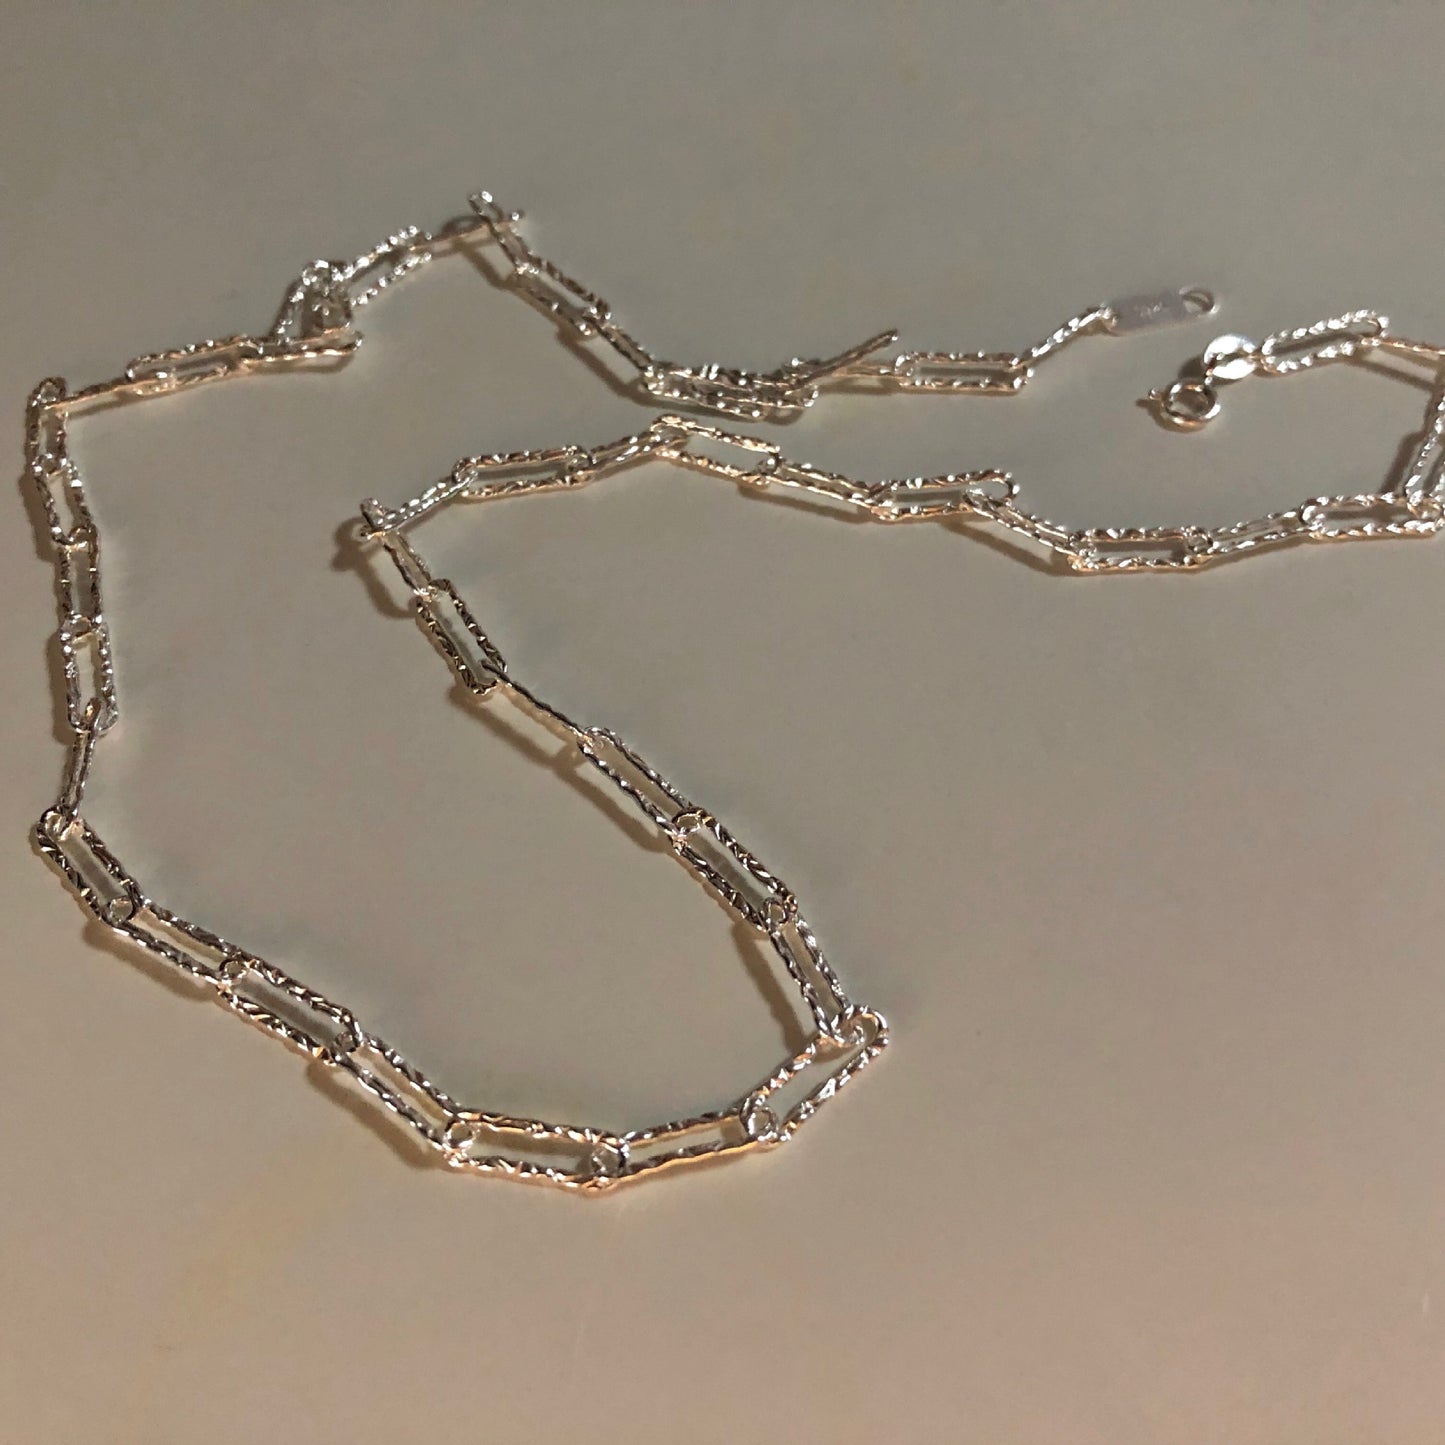 Full star necklace female INS tidal white silver sparkling bone chain bracelet ring light luxury 2021 new